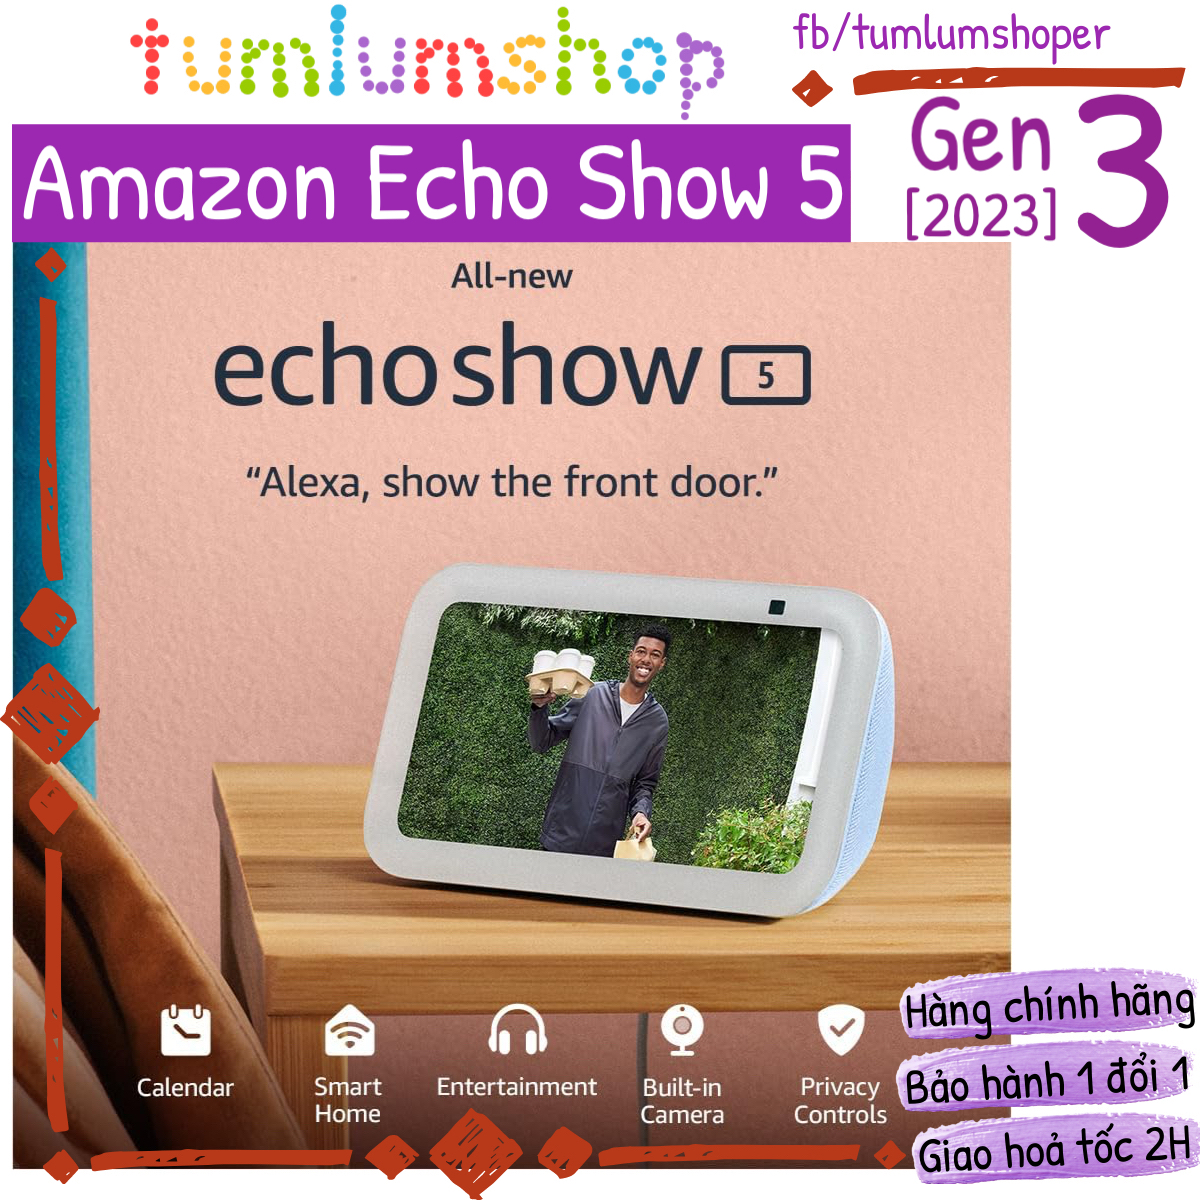 Amazon Echo Show 5 Gen 3 Màn hình thông minh thế hệ mới 2023